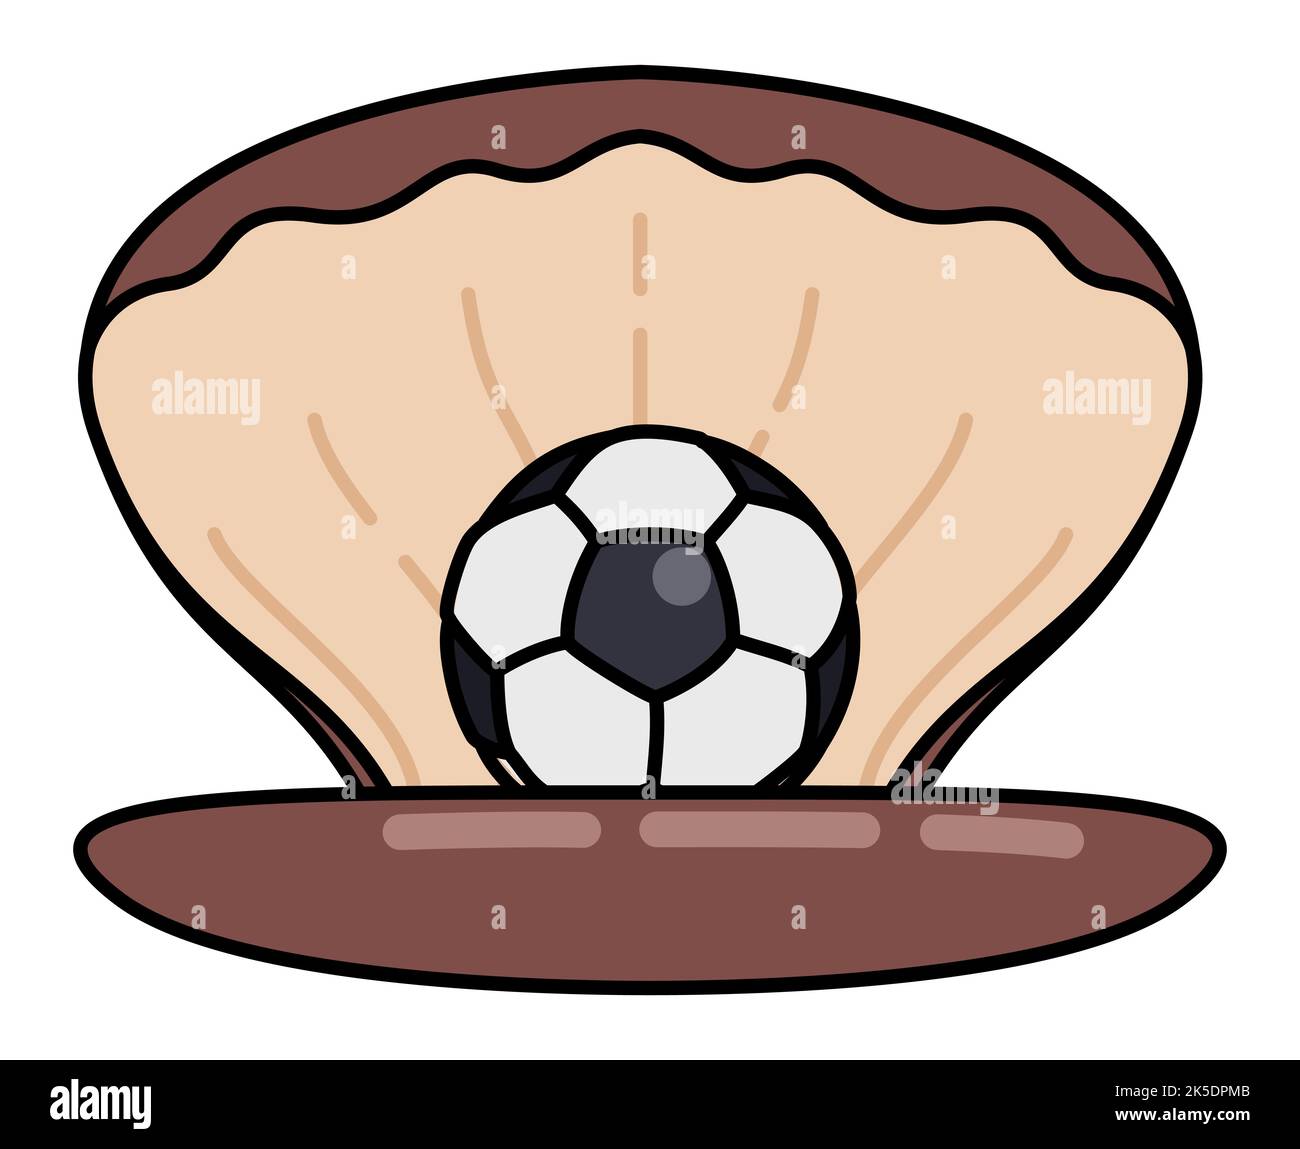 Apri il guscio di ostrica con una palla da calcio come una perla. Design con contorni e stile piatto. Illustrazione Vettoriale